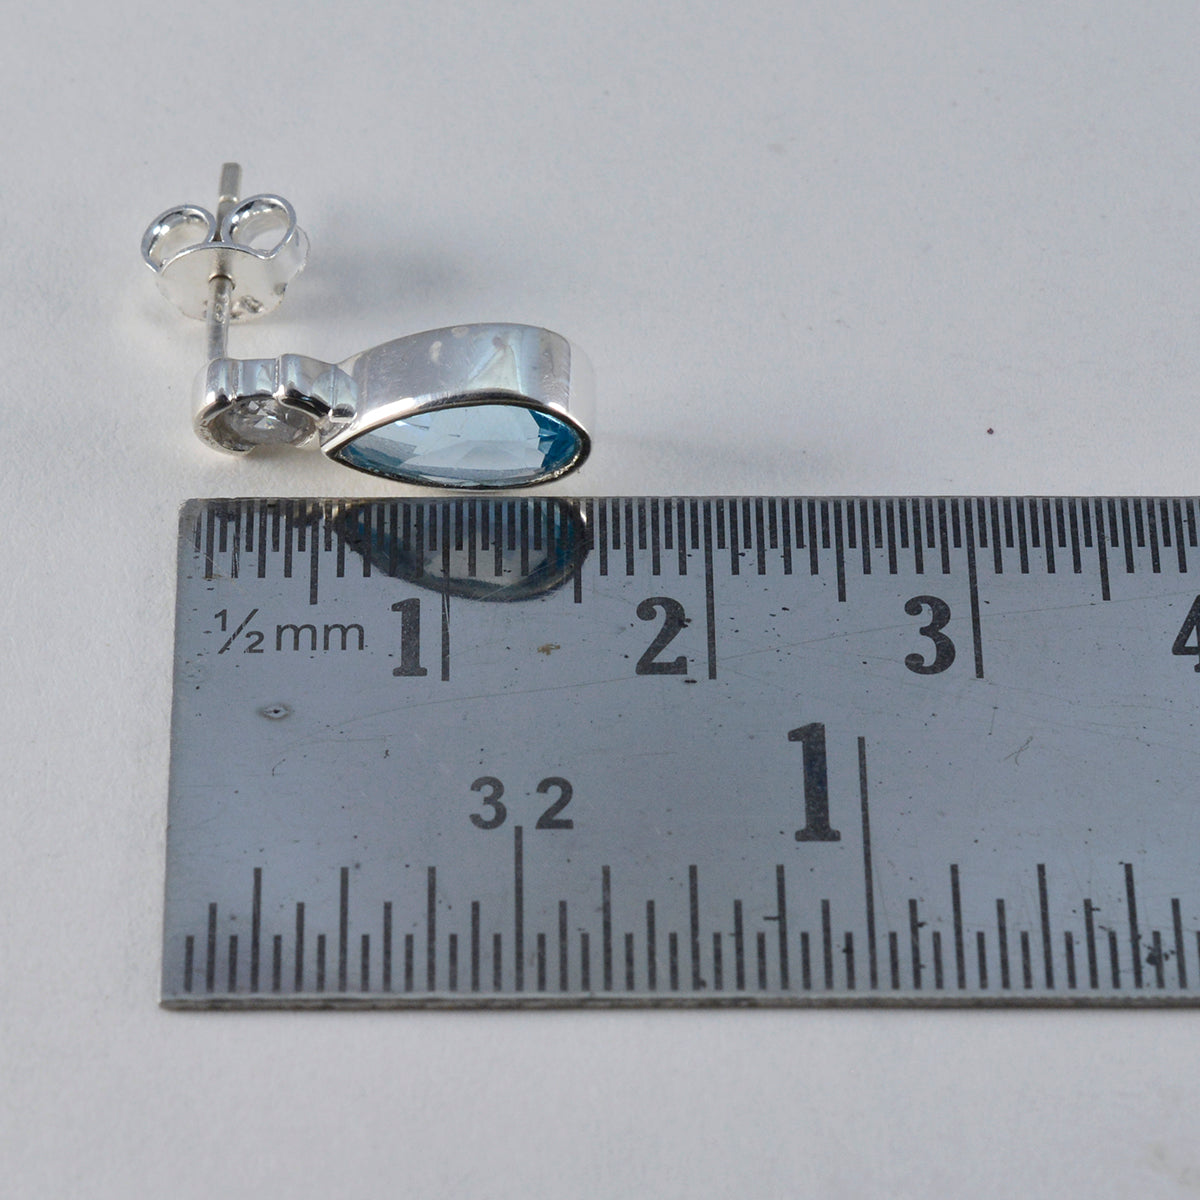 Riyo Spunky 925 Sterling zilveren oorbel voor dame Blue Topaz Earring Bezel Setting Blue Earring Stud Earring